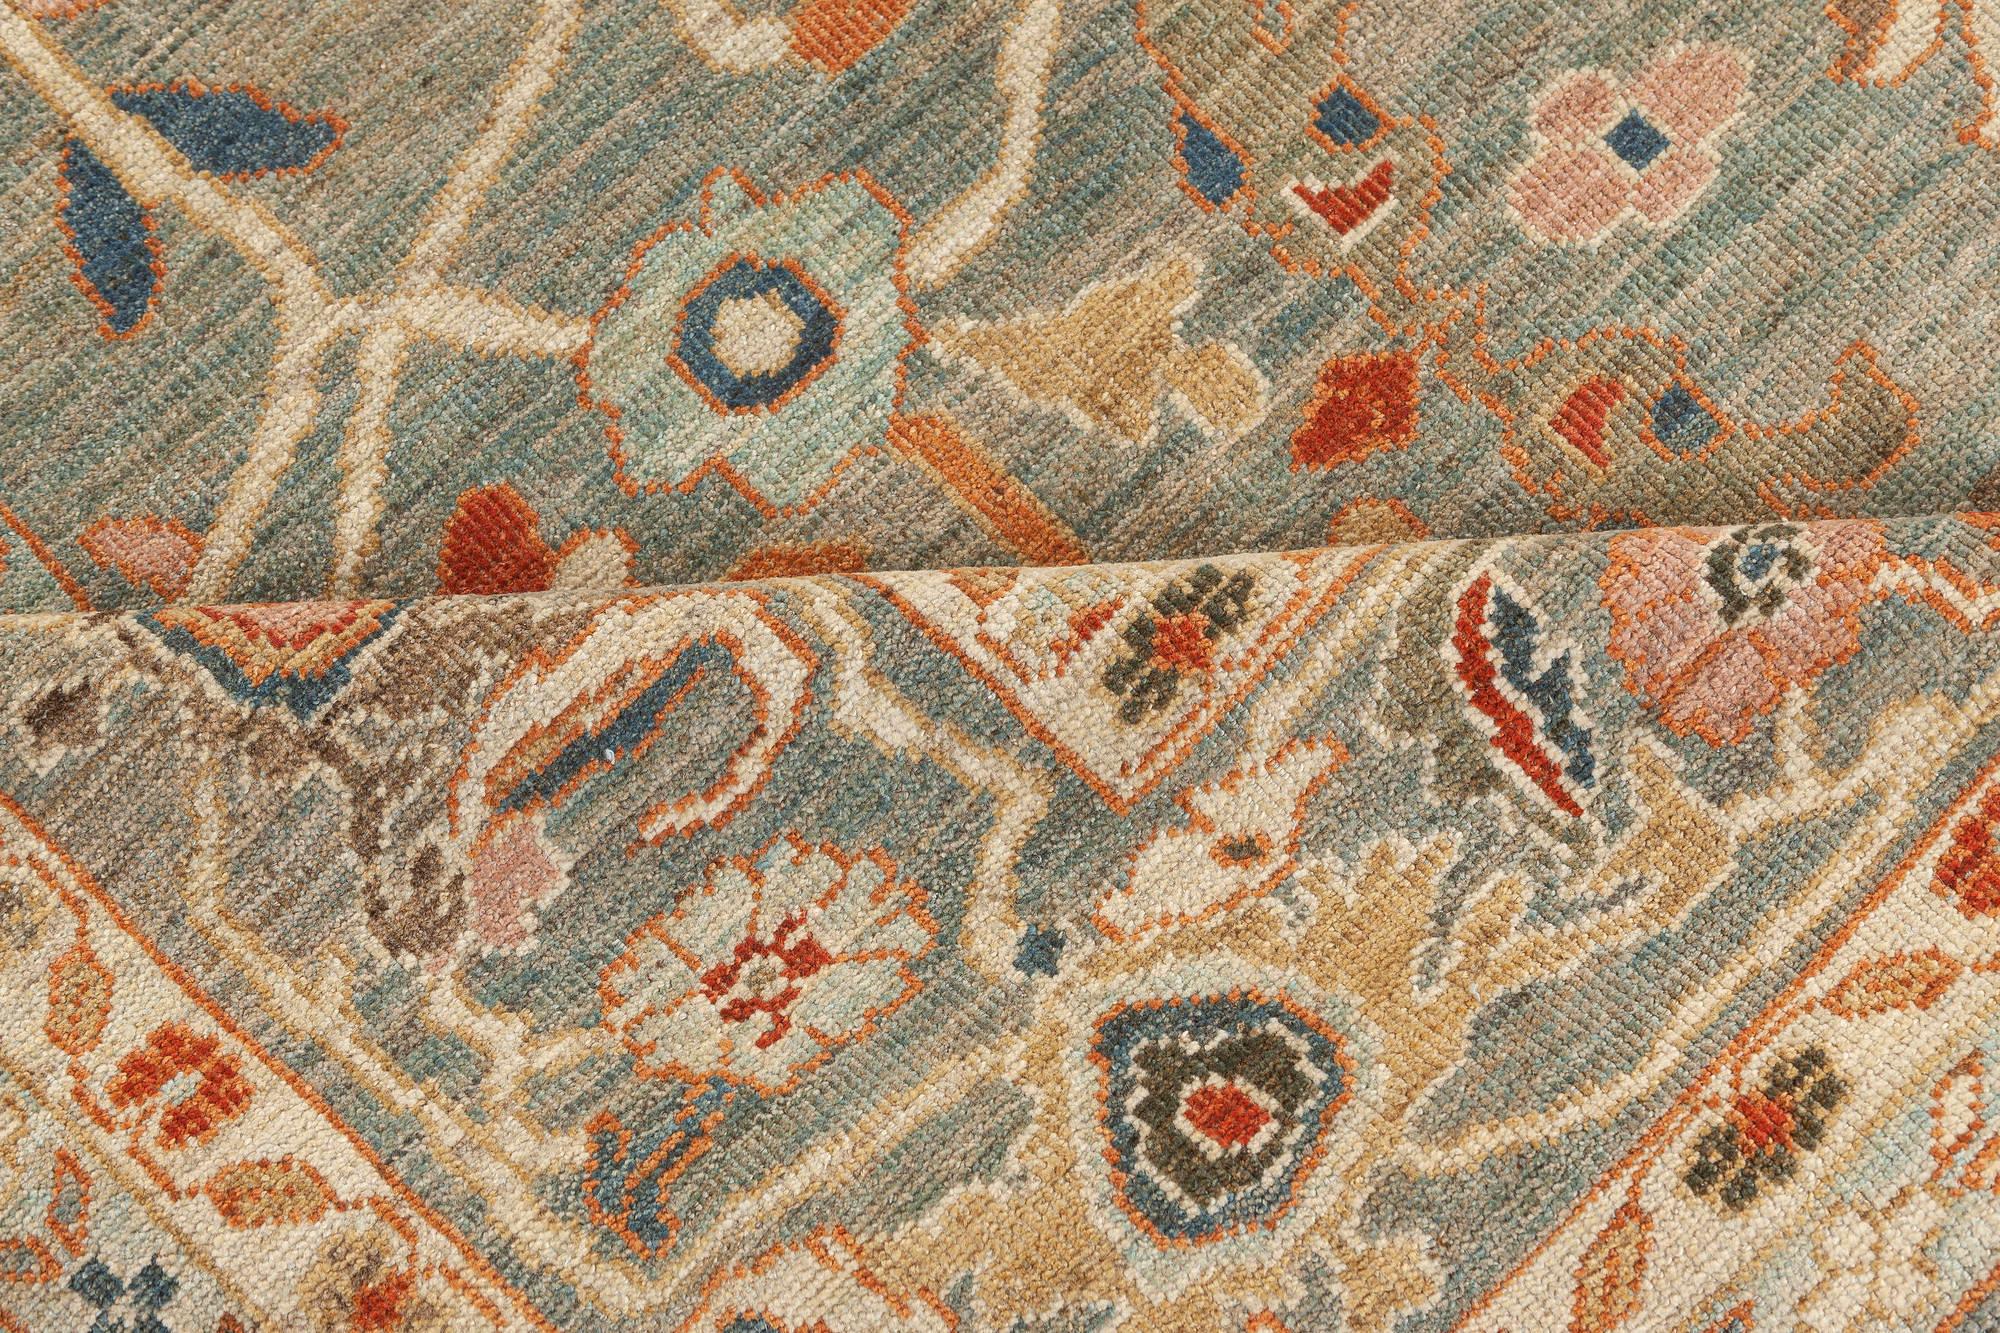 Tapis contemporain en laine nouée à la main, inspiré du Sultanabad, par Doris Leslie Blau.
Taille : 9'10